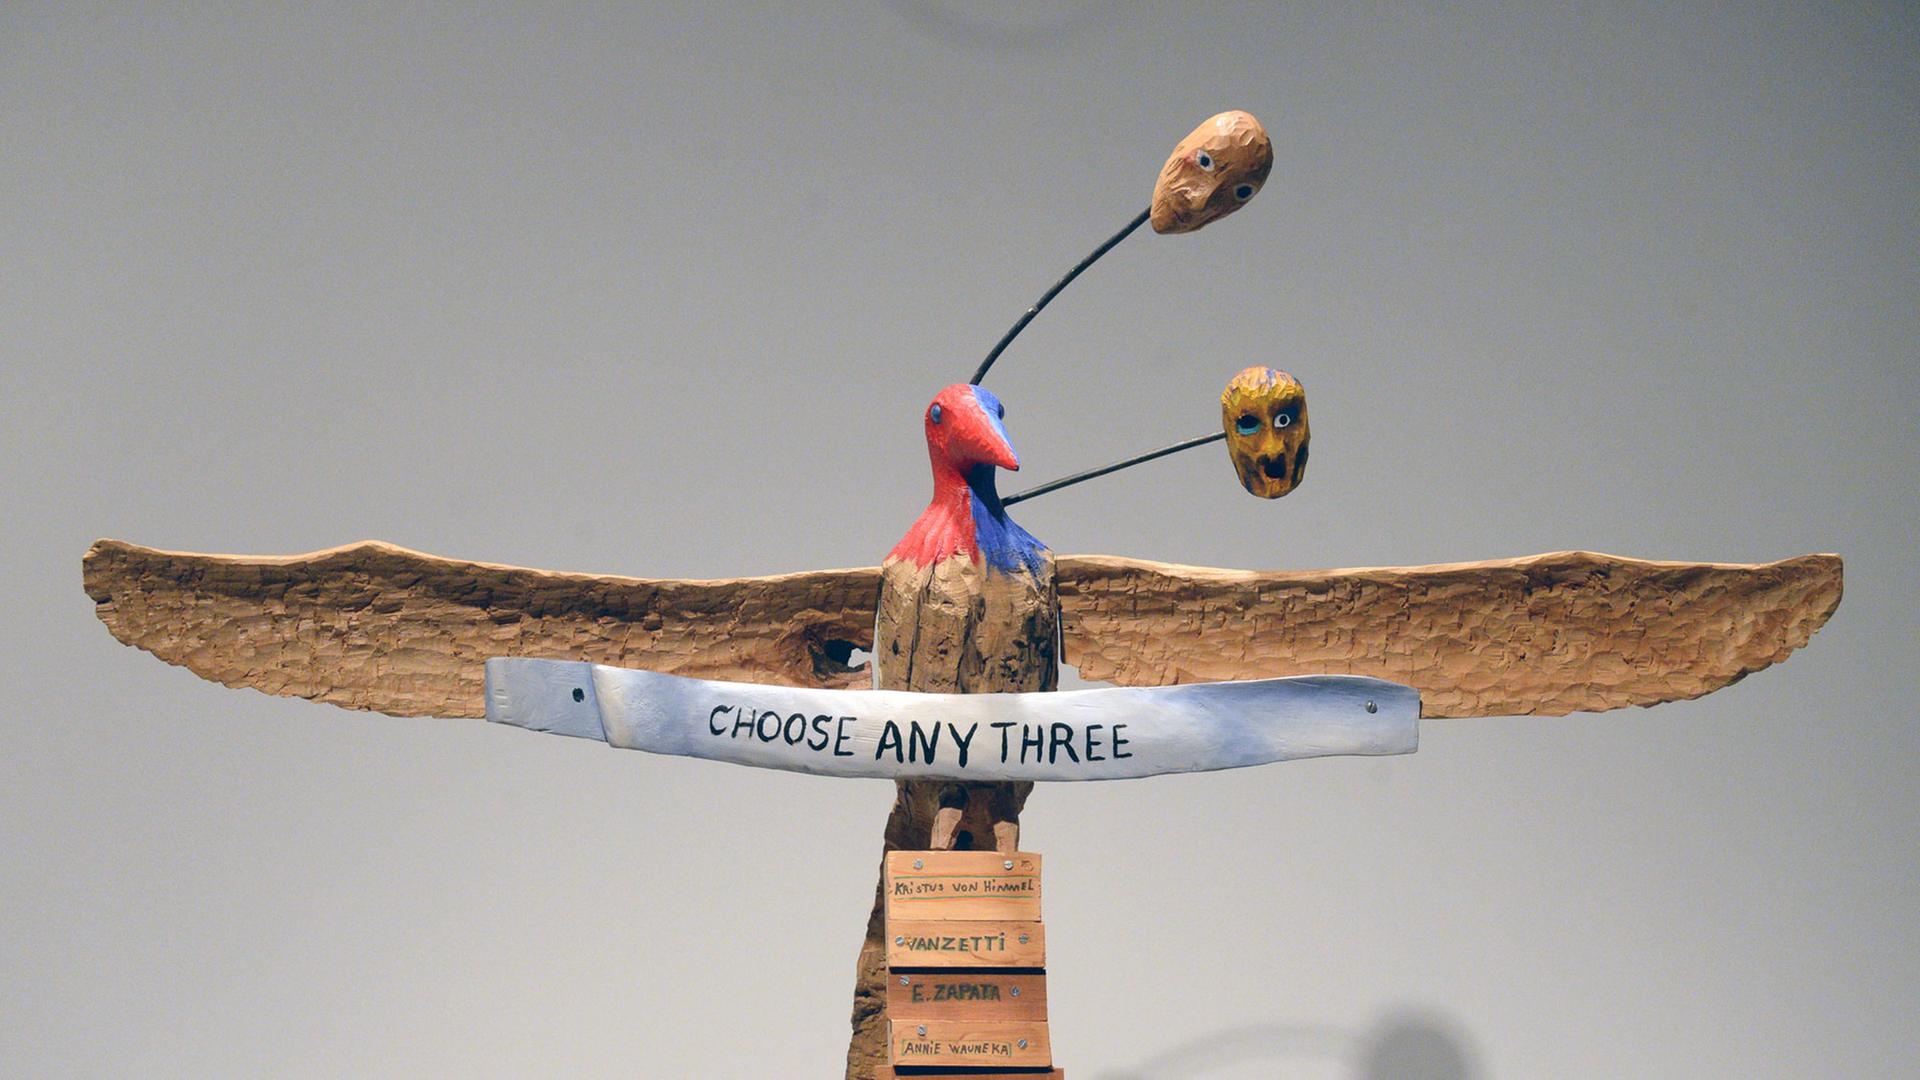 Das Objekt "Choose any three" von 1989 des Künstlers Jimmie Durham, aufgenommen am 07.03.2014 im Rahmen der Biennale 2014 im Whitney Museum in New York (USA).